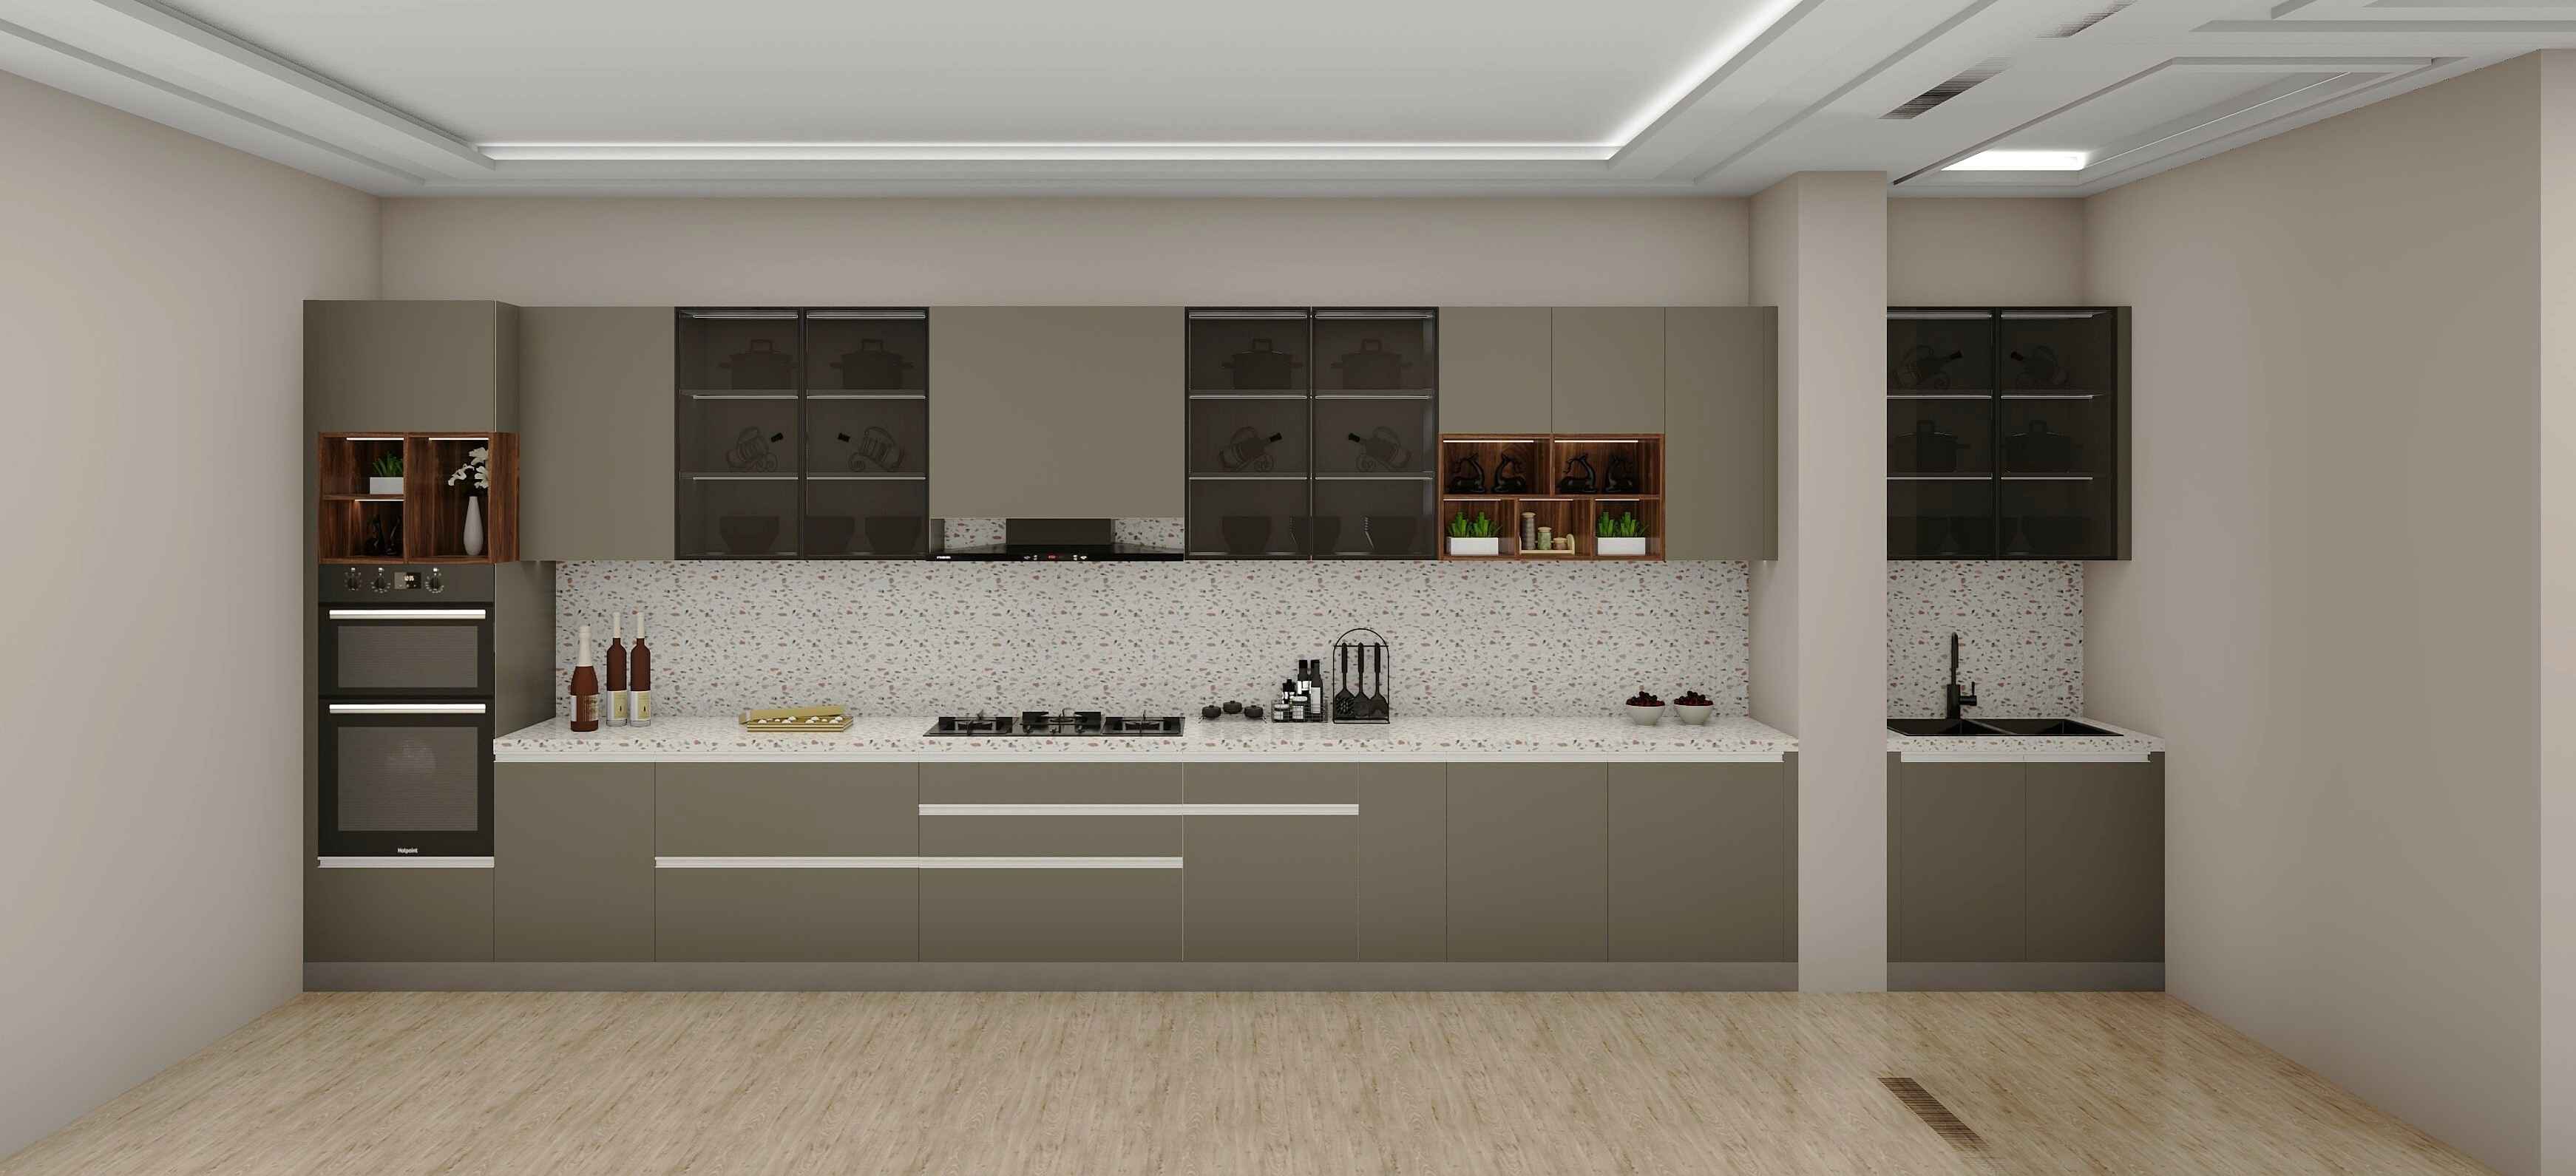 Loft Cullianry Inline Modular Kitchen Design